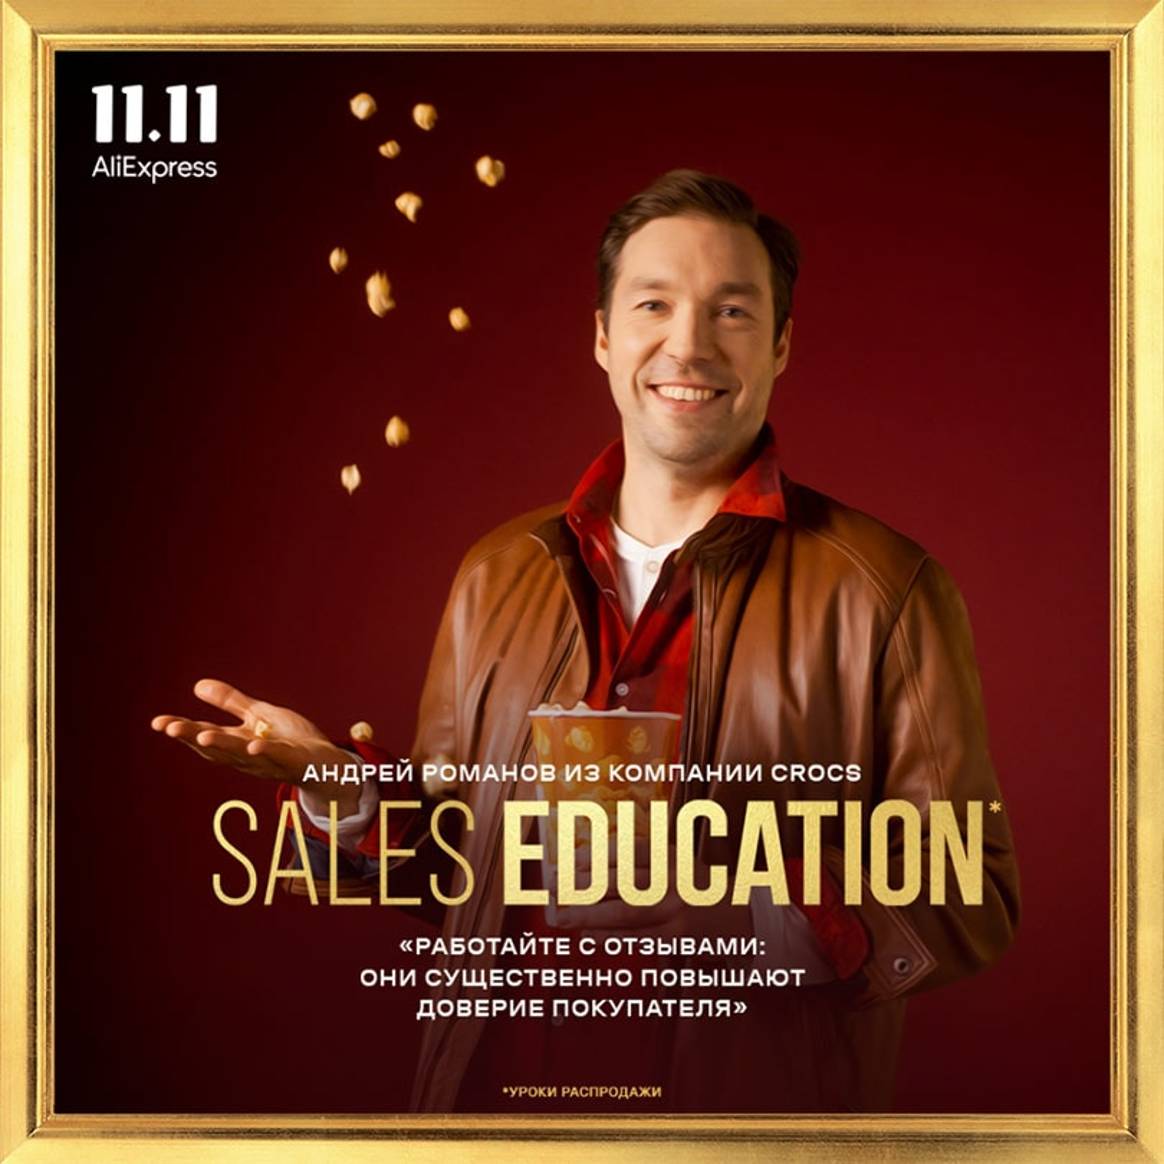 AliExpress представил кампанию за этичные распродажи Sales Education